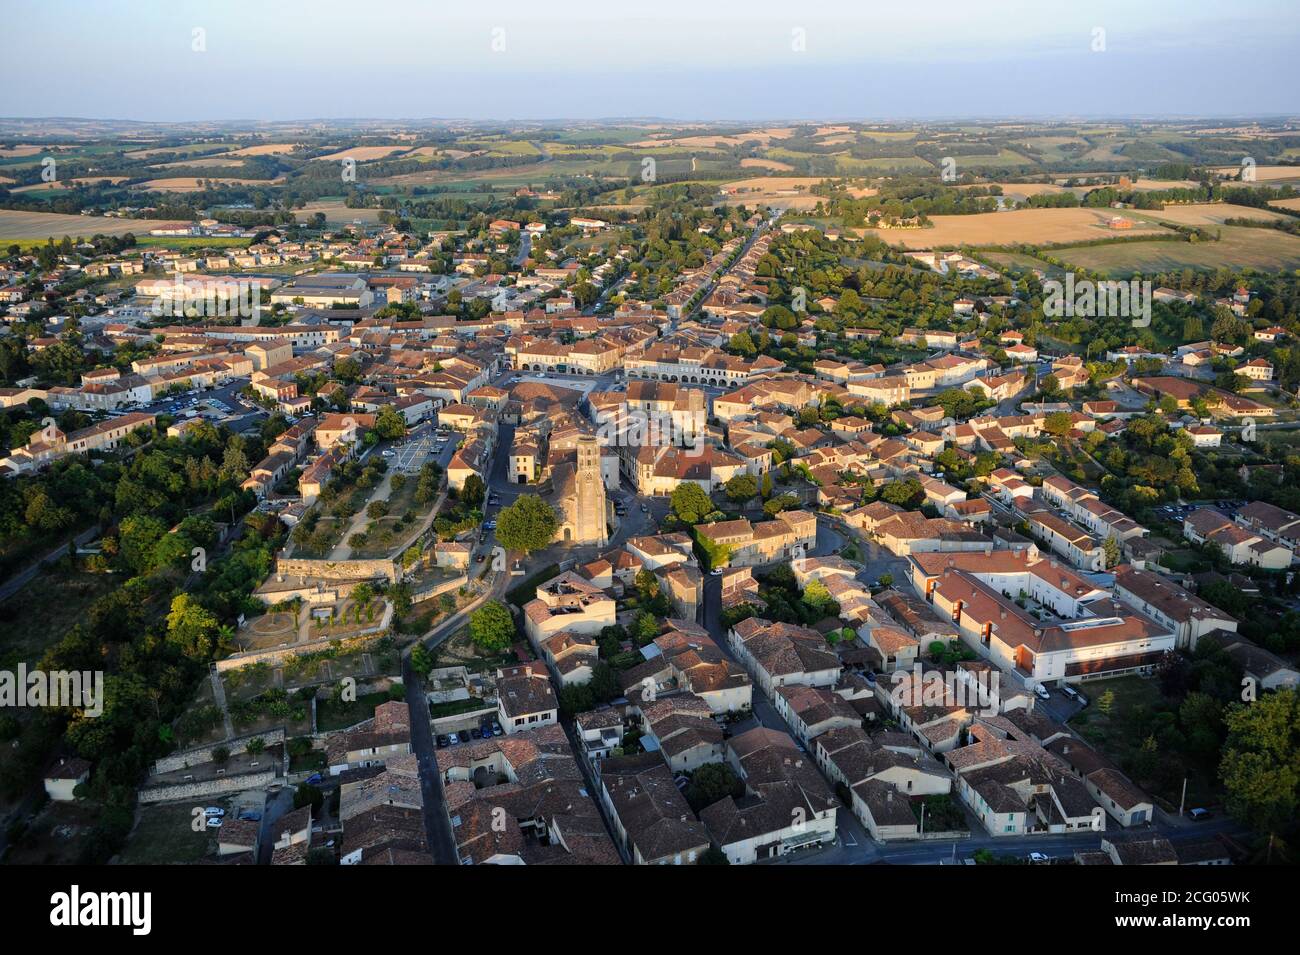 France, Gers, Monfort (vue aérienne) Banque D'Images